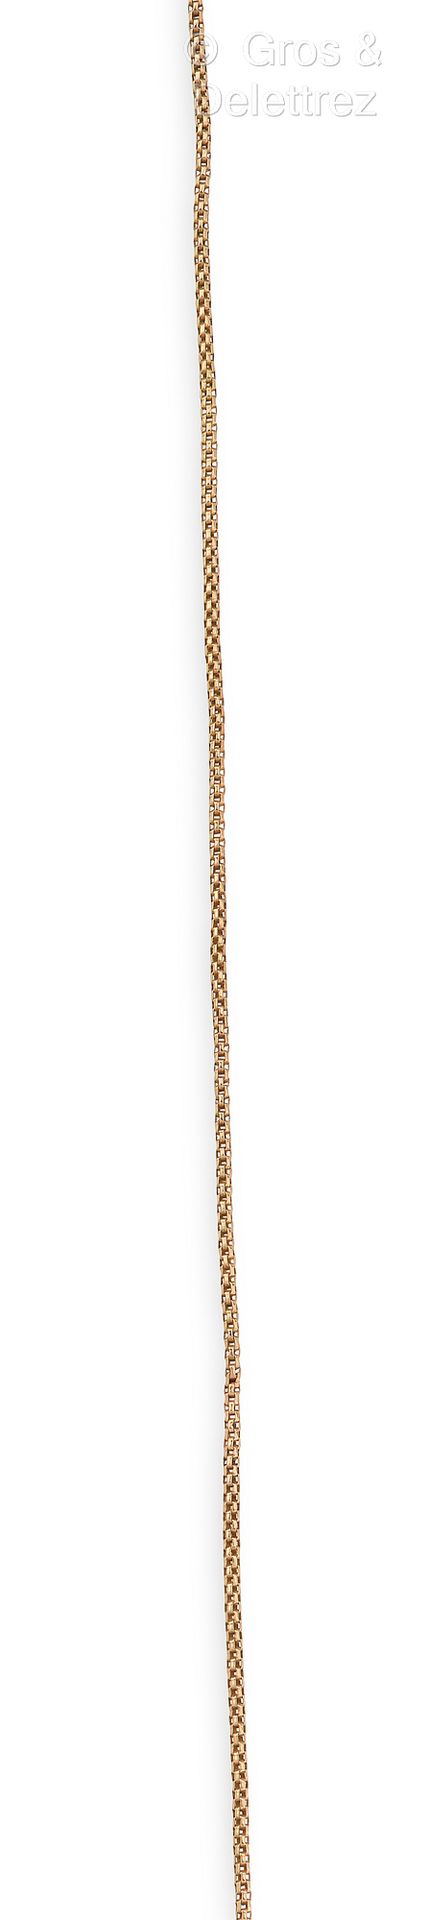 Null 精致的黄金链，带有威尼斯式链接。长度：78厘米。D. 5,5g。